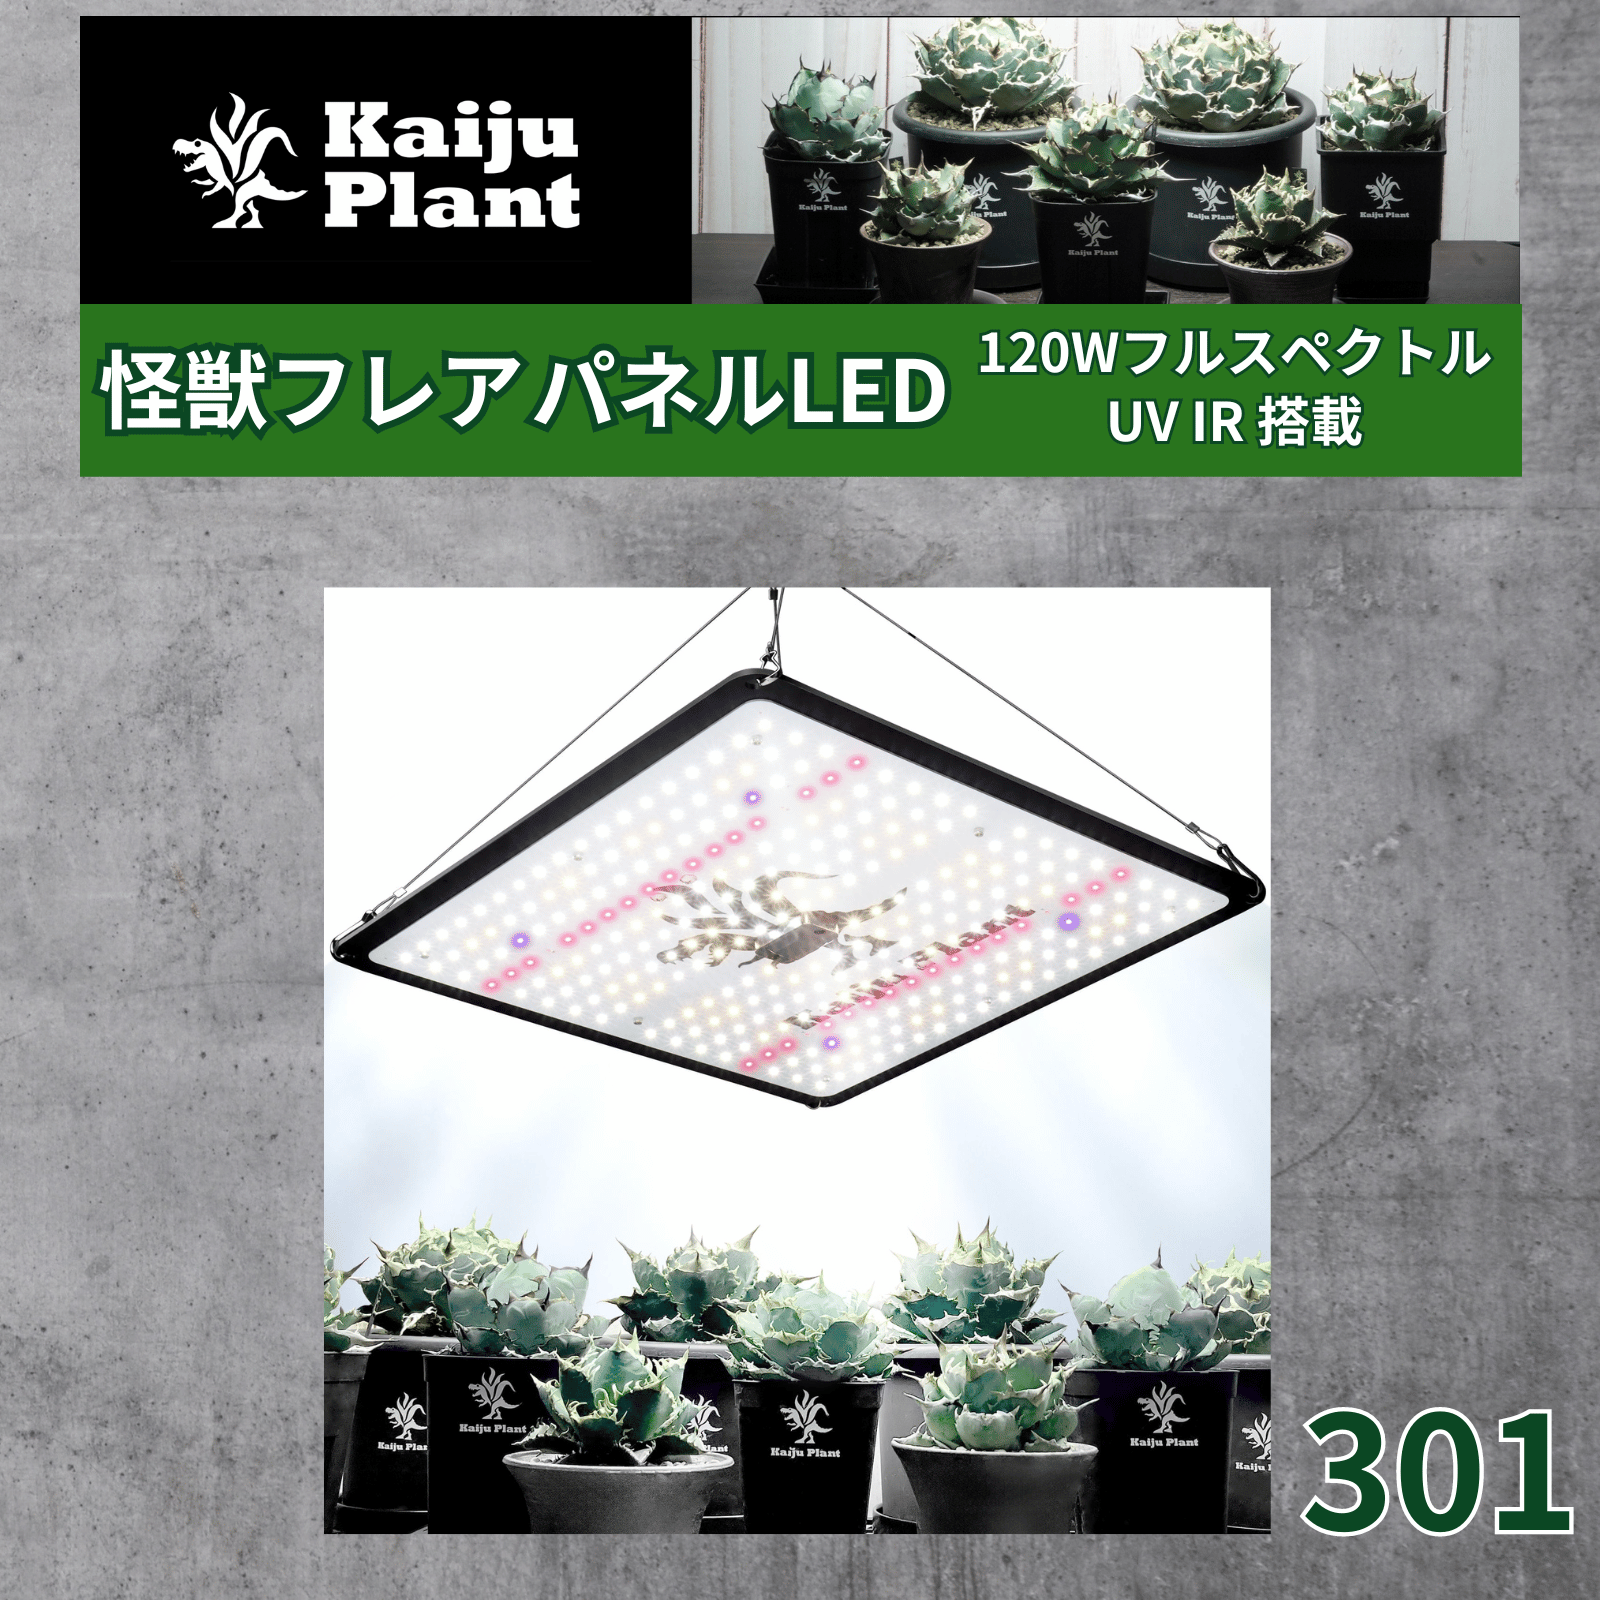 Kaiju Plant растения выращивание свет монстр flair ... солнце. подобный panel LED полный spec ktoruUV IR установка (301( черный )) одиночный товар 1 шт 